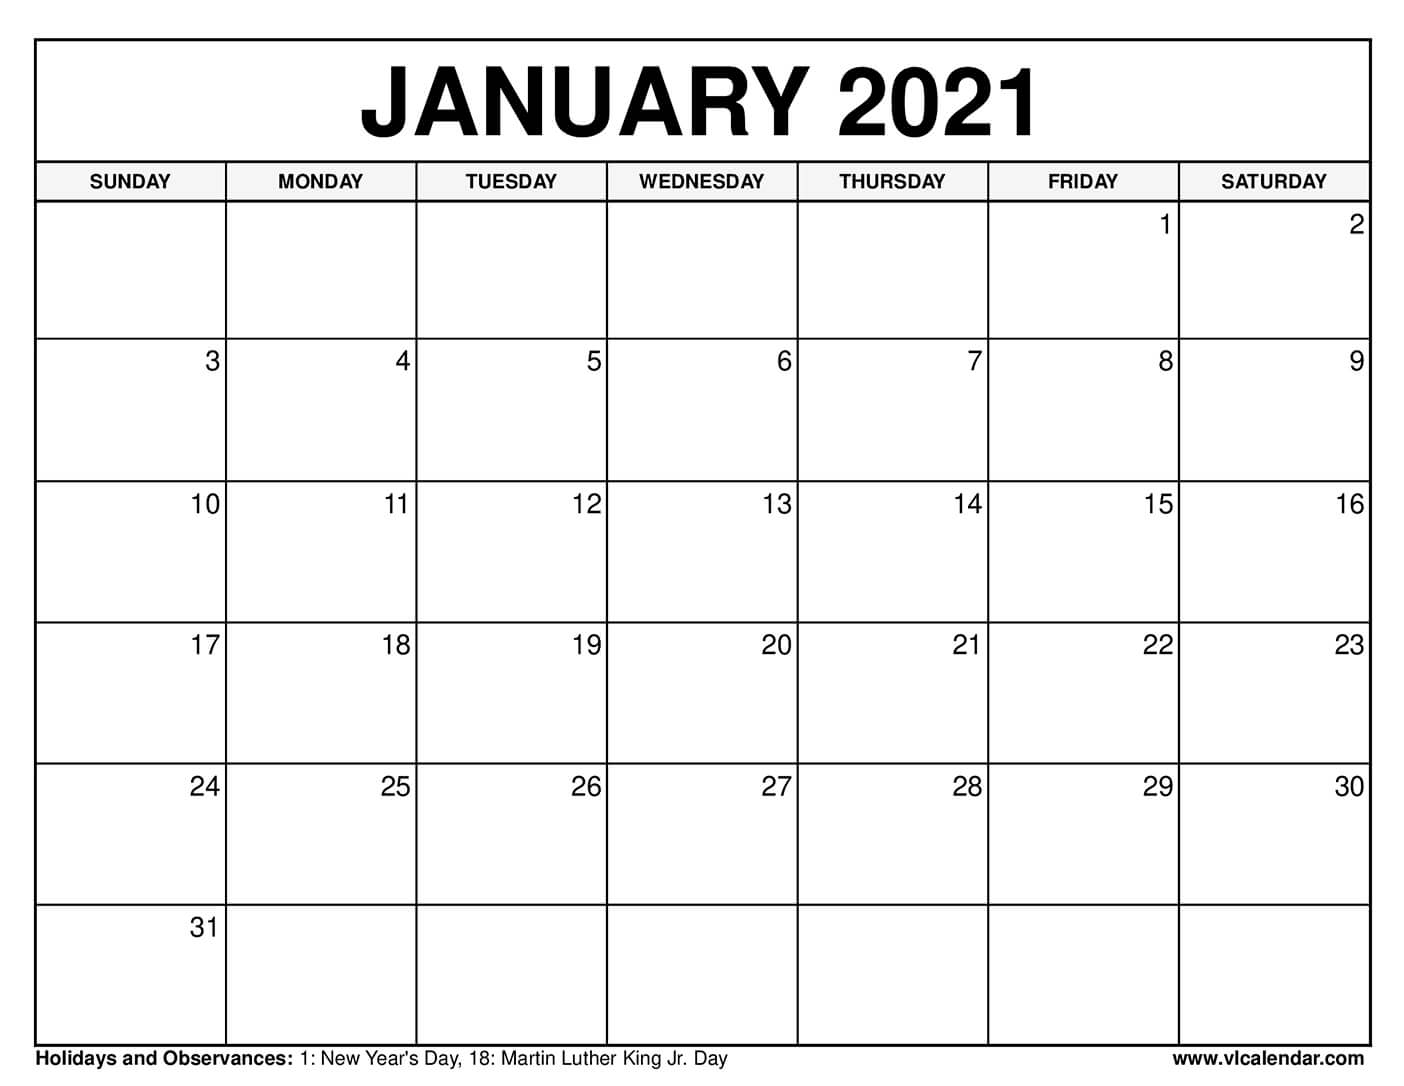 האם 20 בינואר 2021 הוא חג?